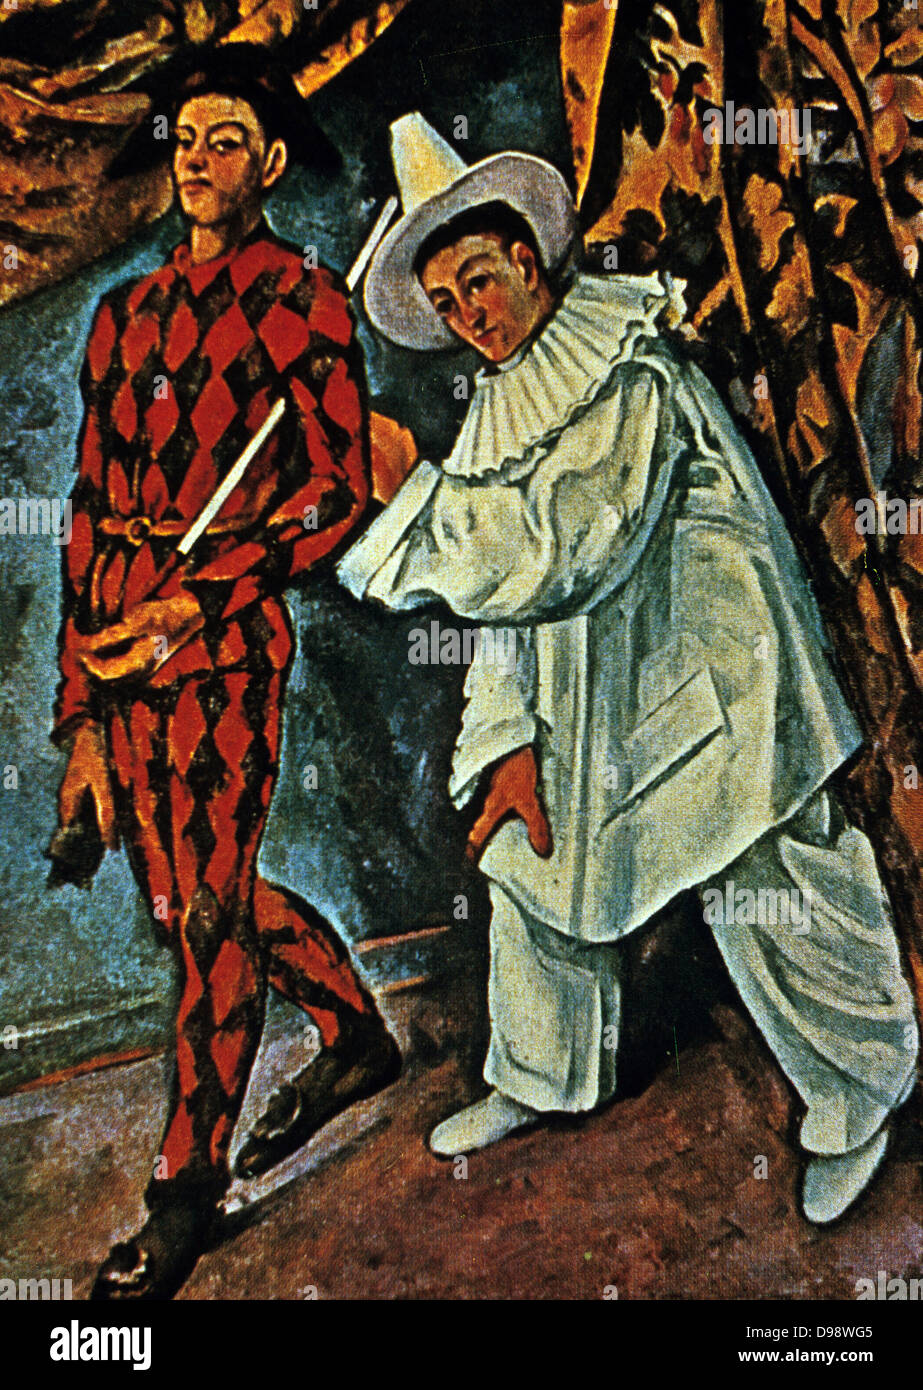 Mardi Gras", 1888. Öl auf Leinwand. Paul Cezanne (1839-1906) French Post-Impressionist Painter. Zwei Figuren der Commedia dell'arte Zeichen Harlekin und Pierrot. Stockfoto